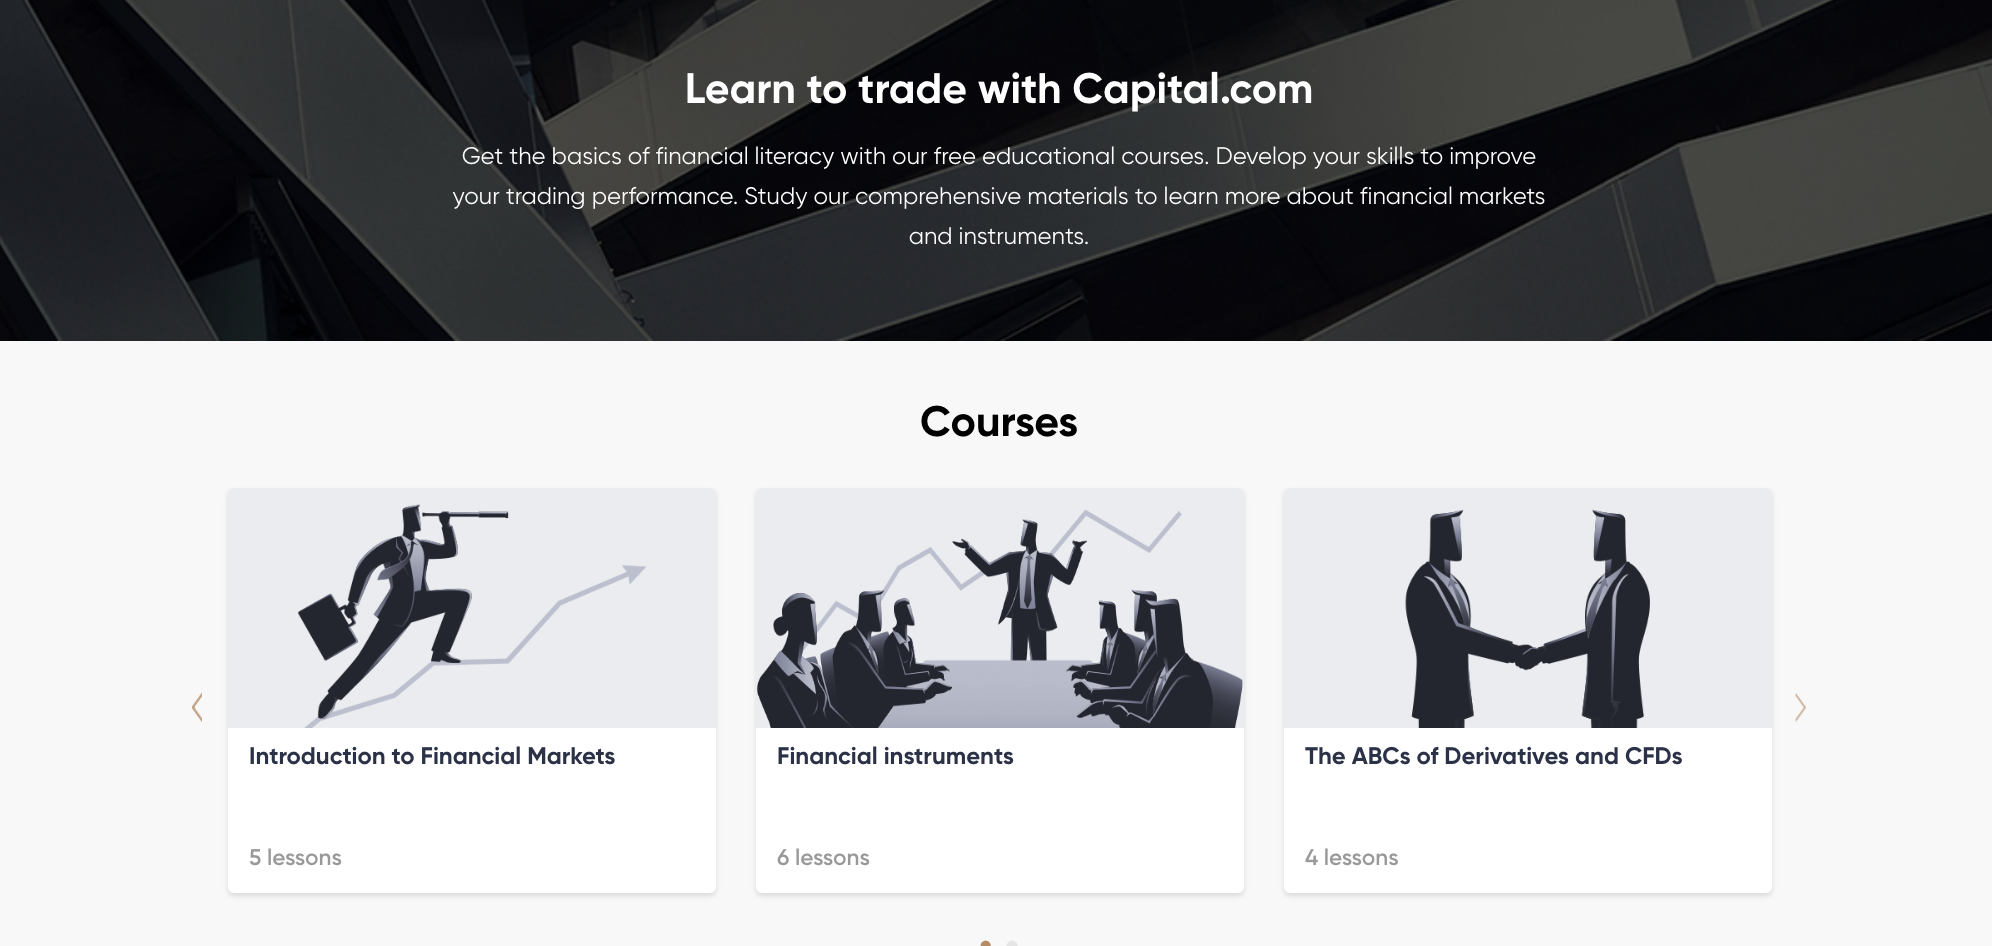 Capital.com има цял раздел, където можете да научите всичко за търговията